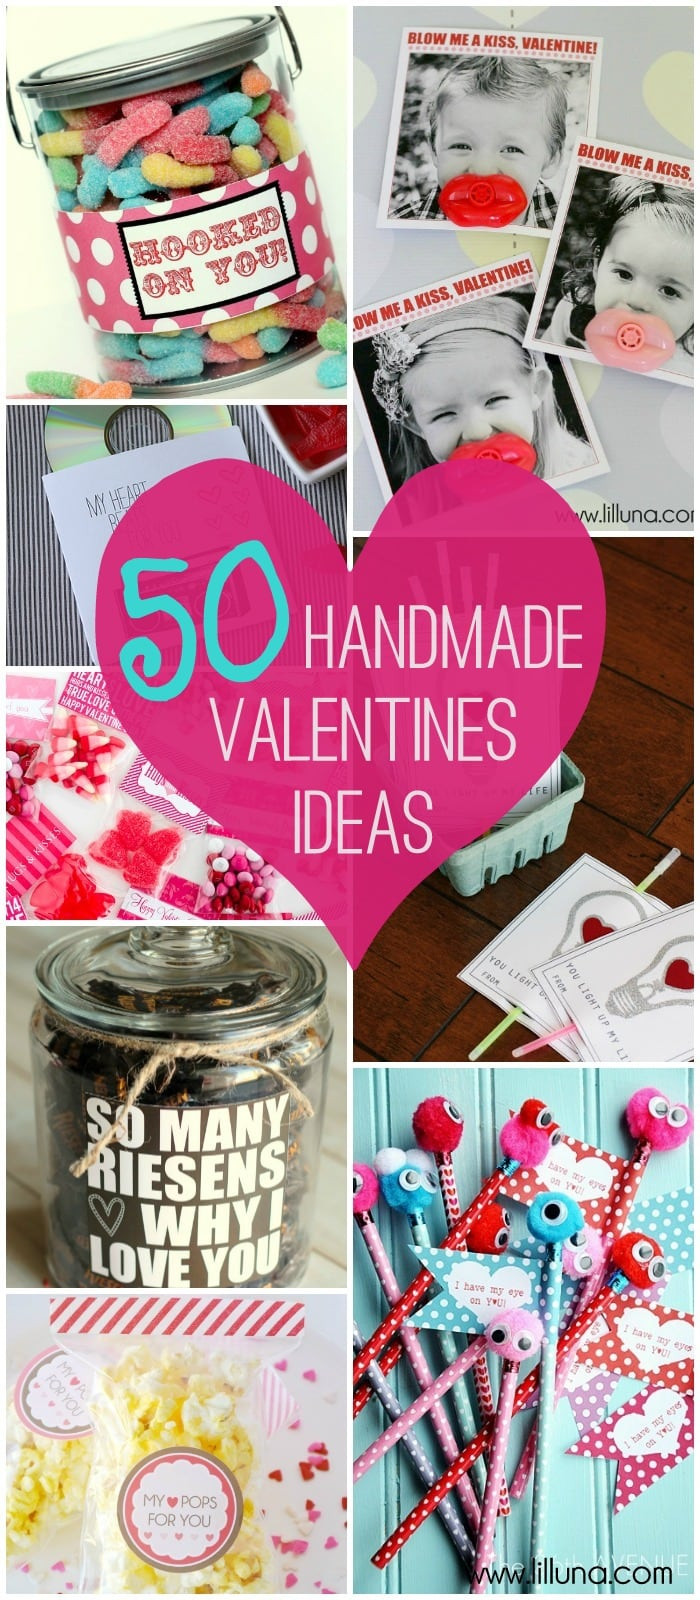 Valentine School Gift Ideas
 Valentines Ideas